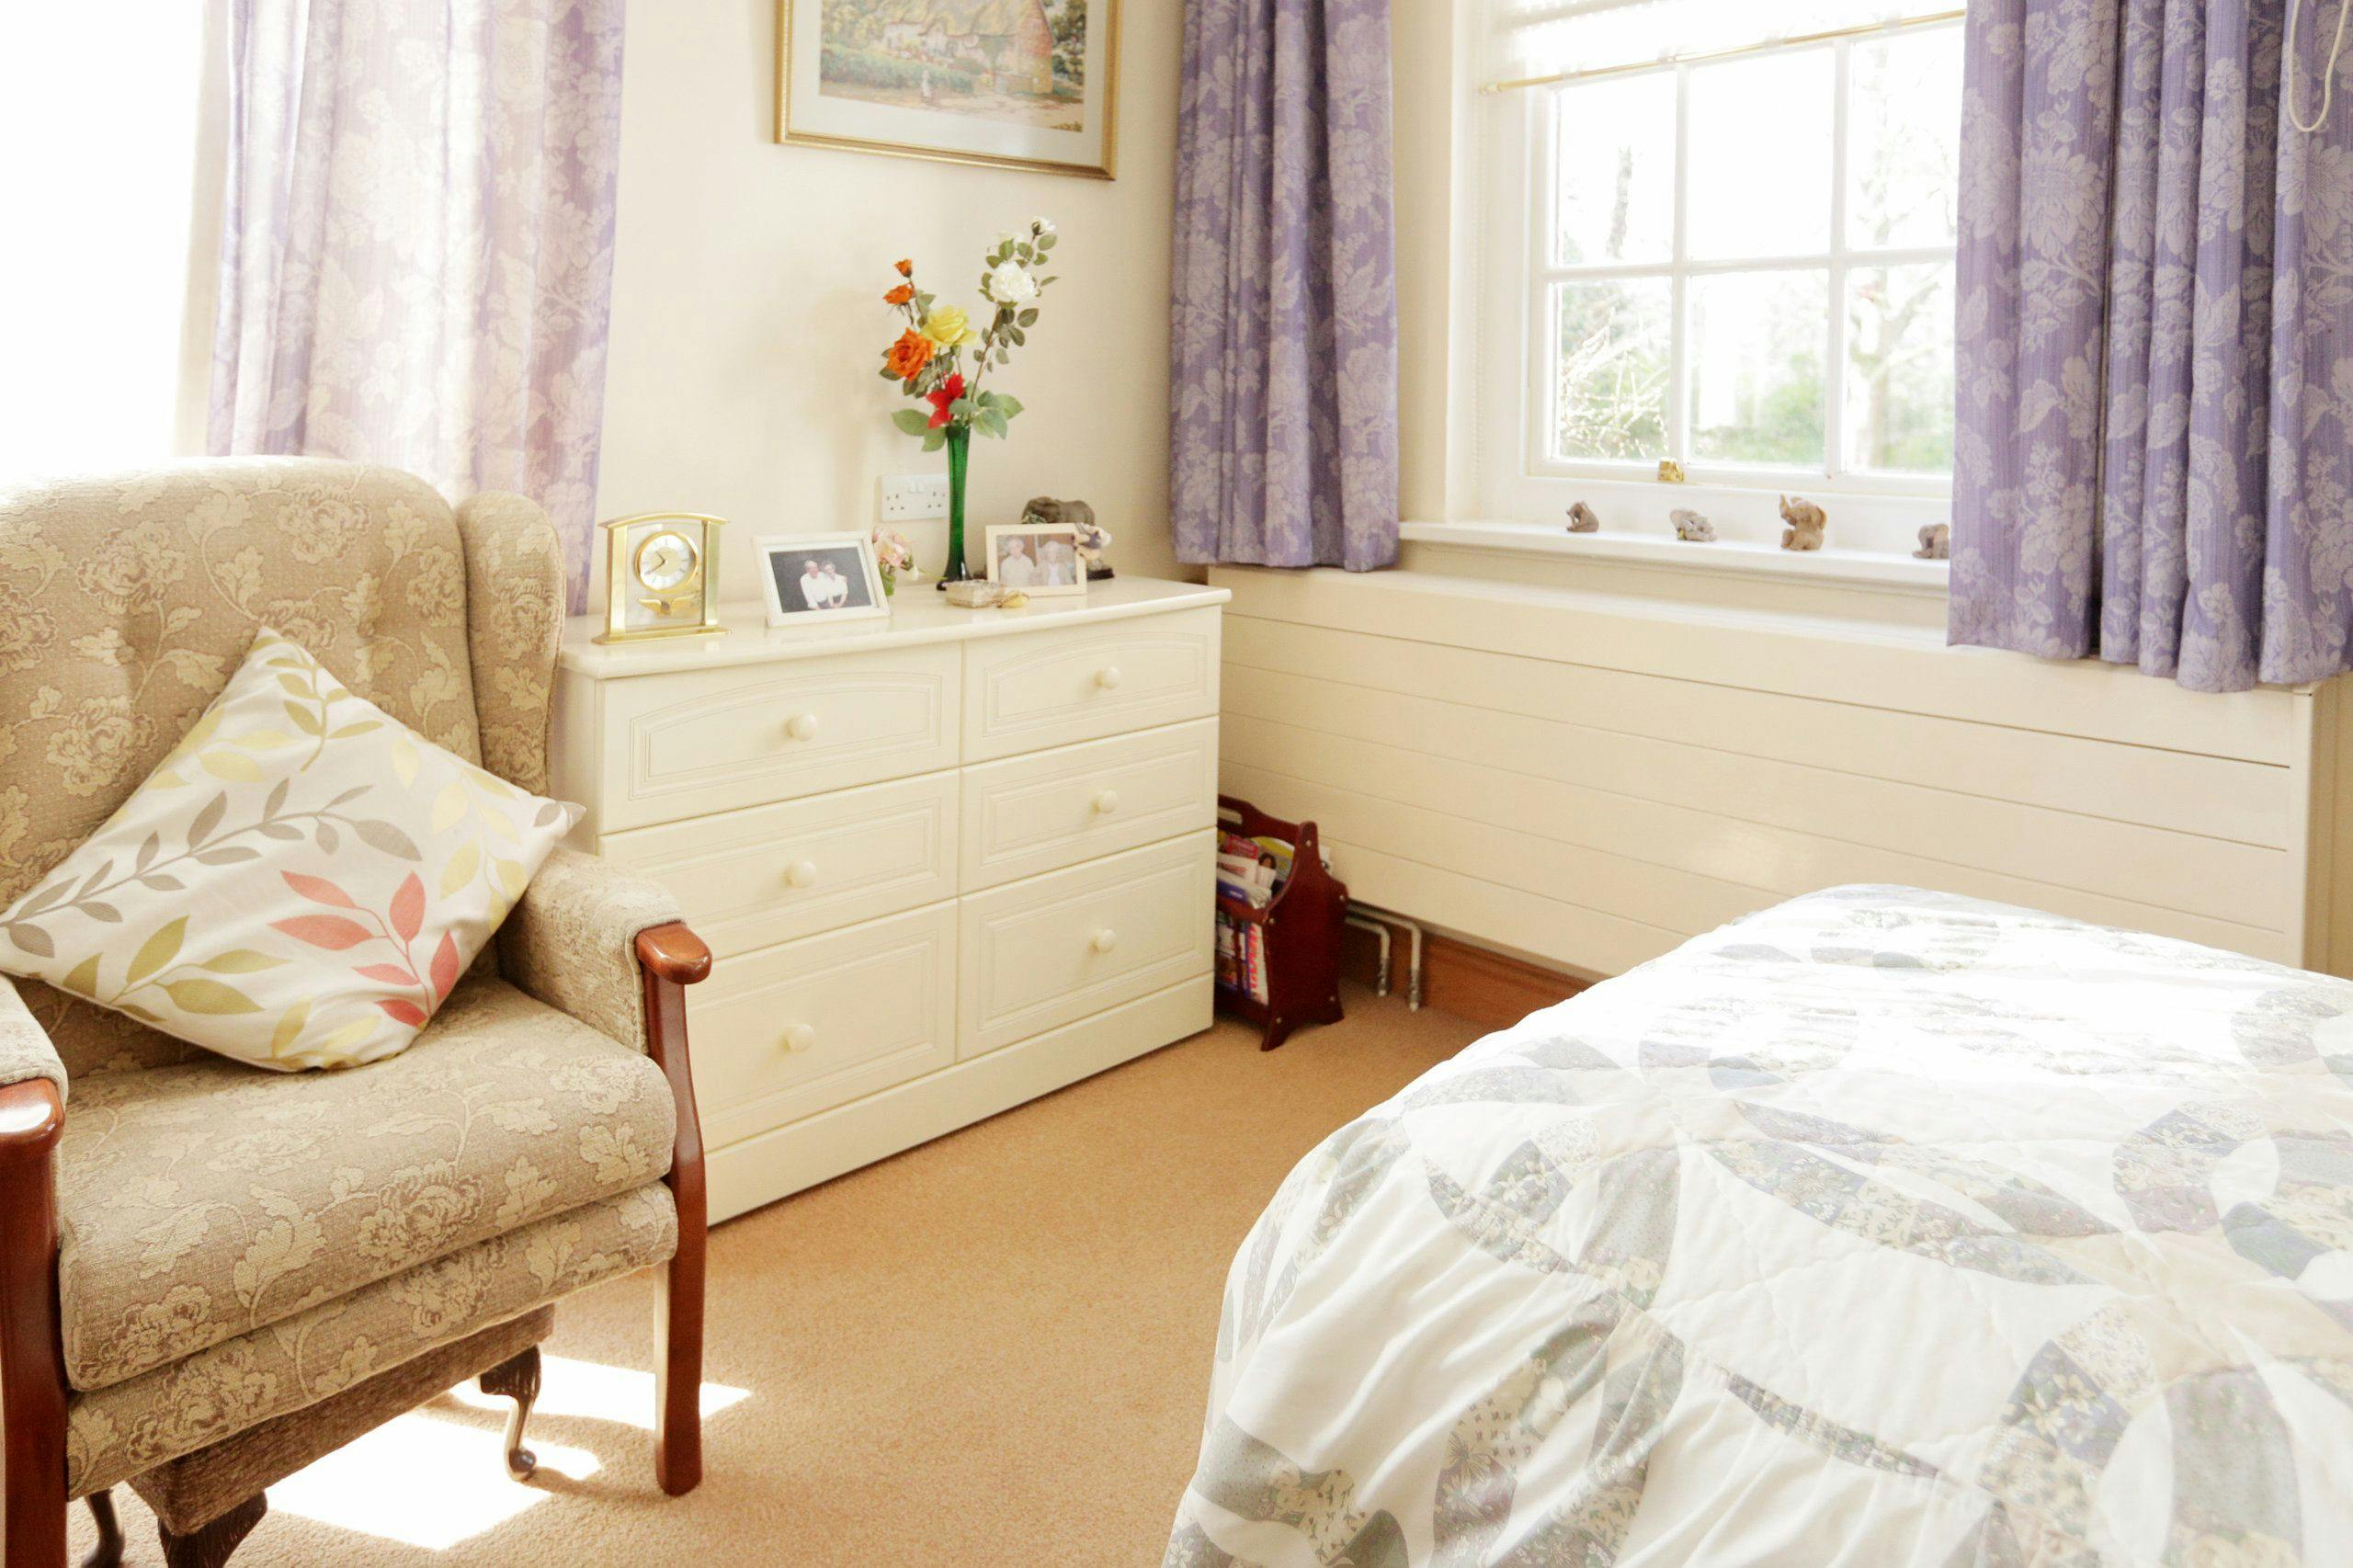 Bedroom at Broadlands Care Home, Lowestoft, Suffolk